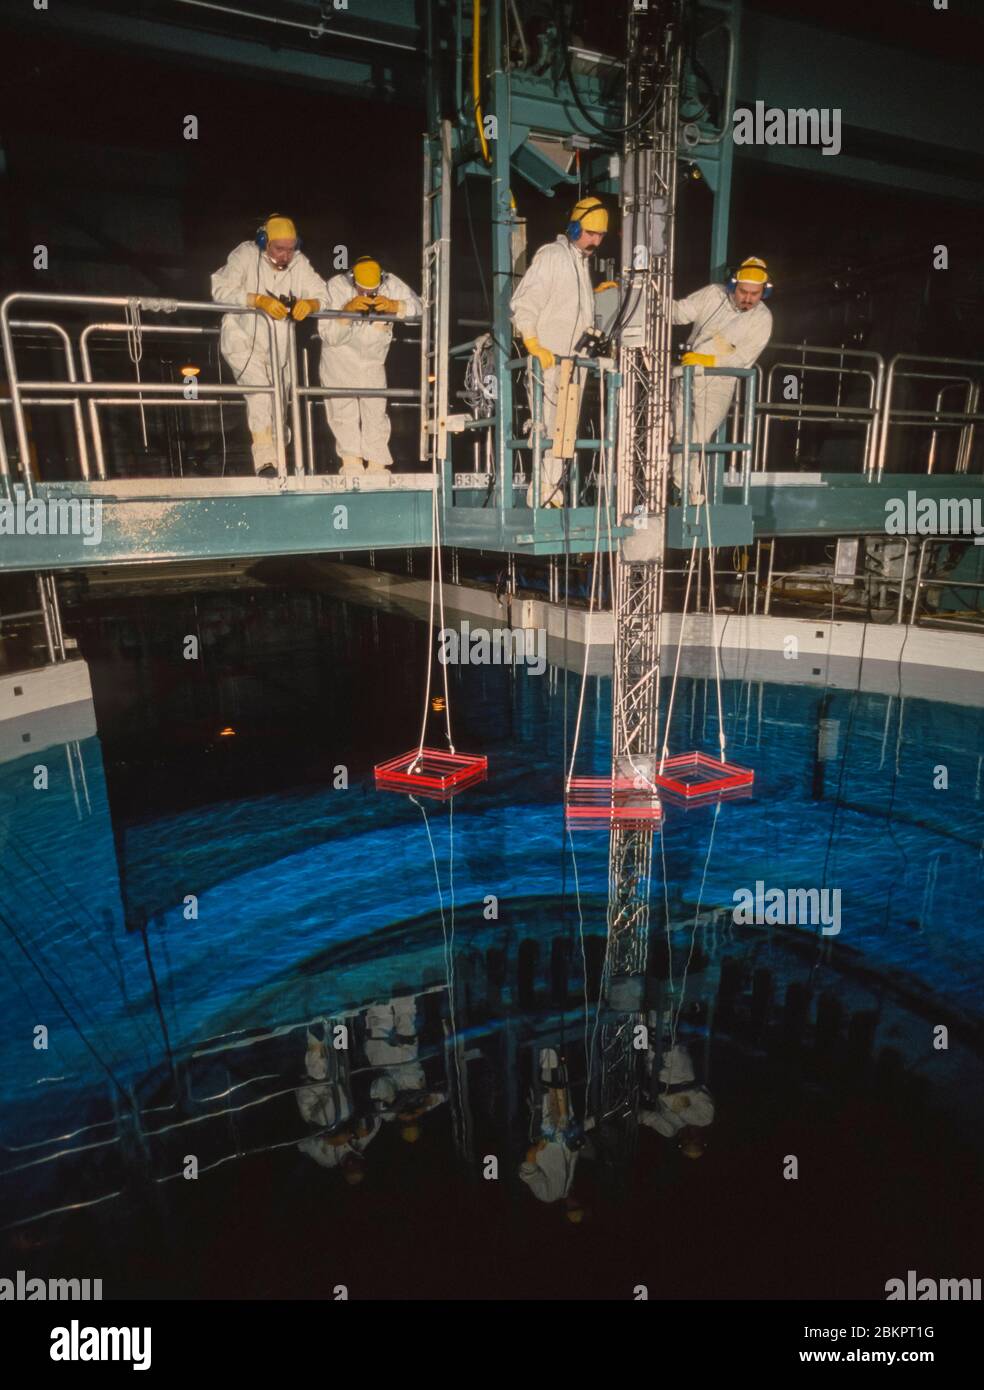 SCRIBA, NEW YORK, USA, 1985 - tecnici al lavoro durante il rifornimento del nucleo del reattore, presso la centrale nucleare Fitzpatrick, Nine Mile Point. Foto Stock